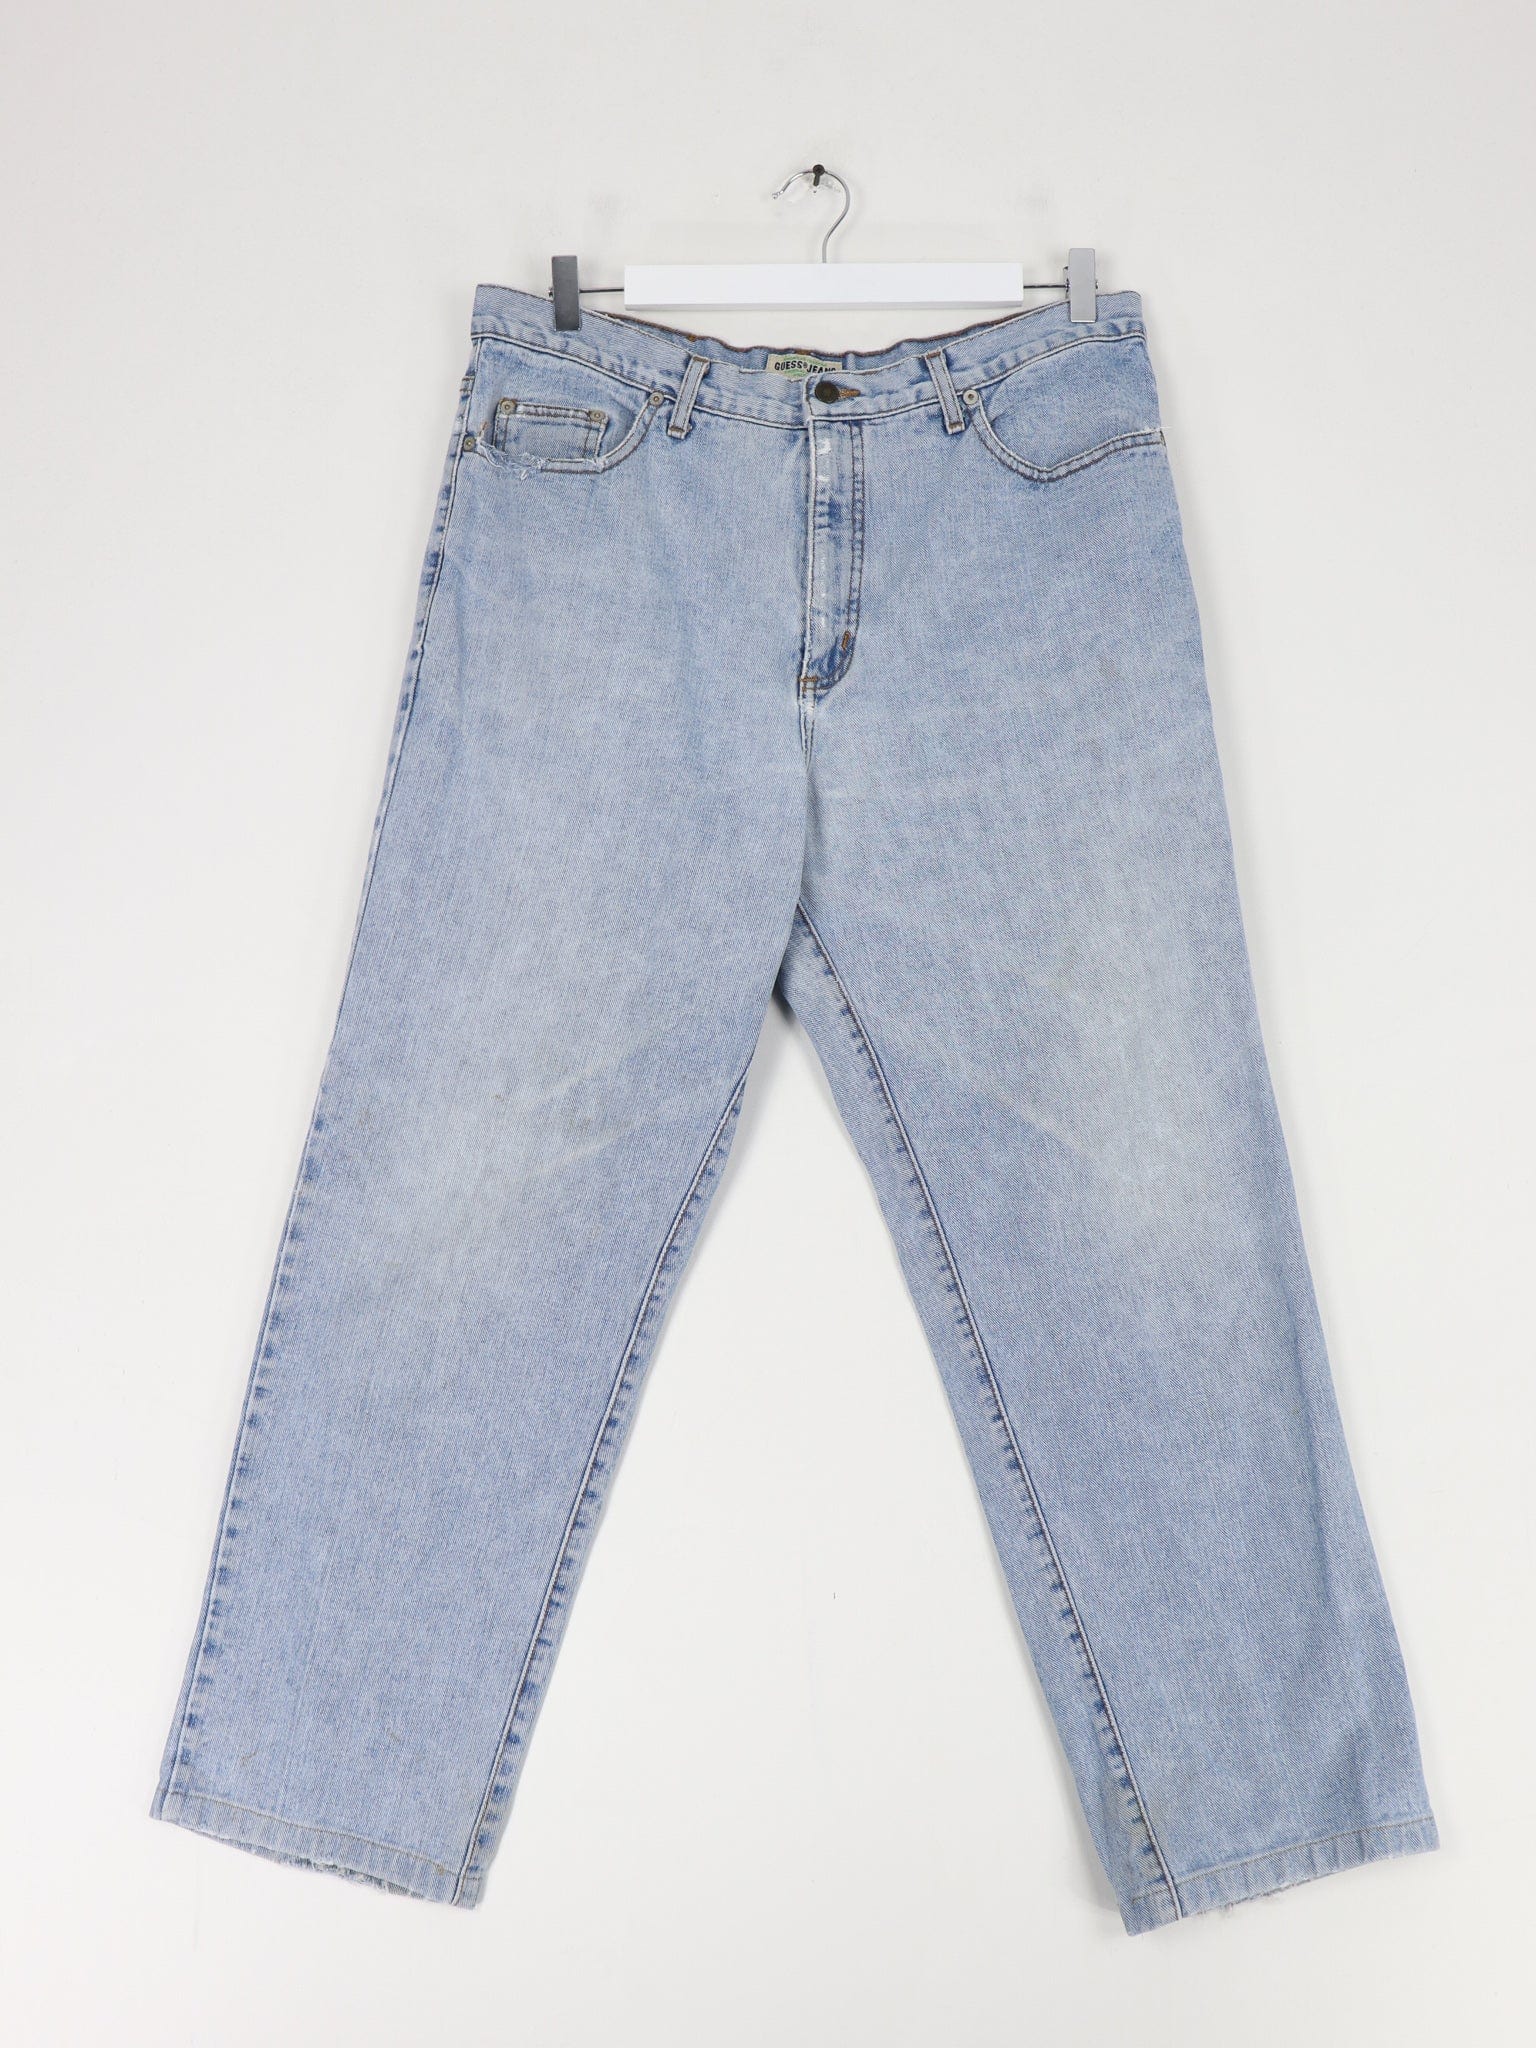 vintage guess jeans